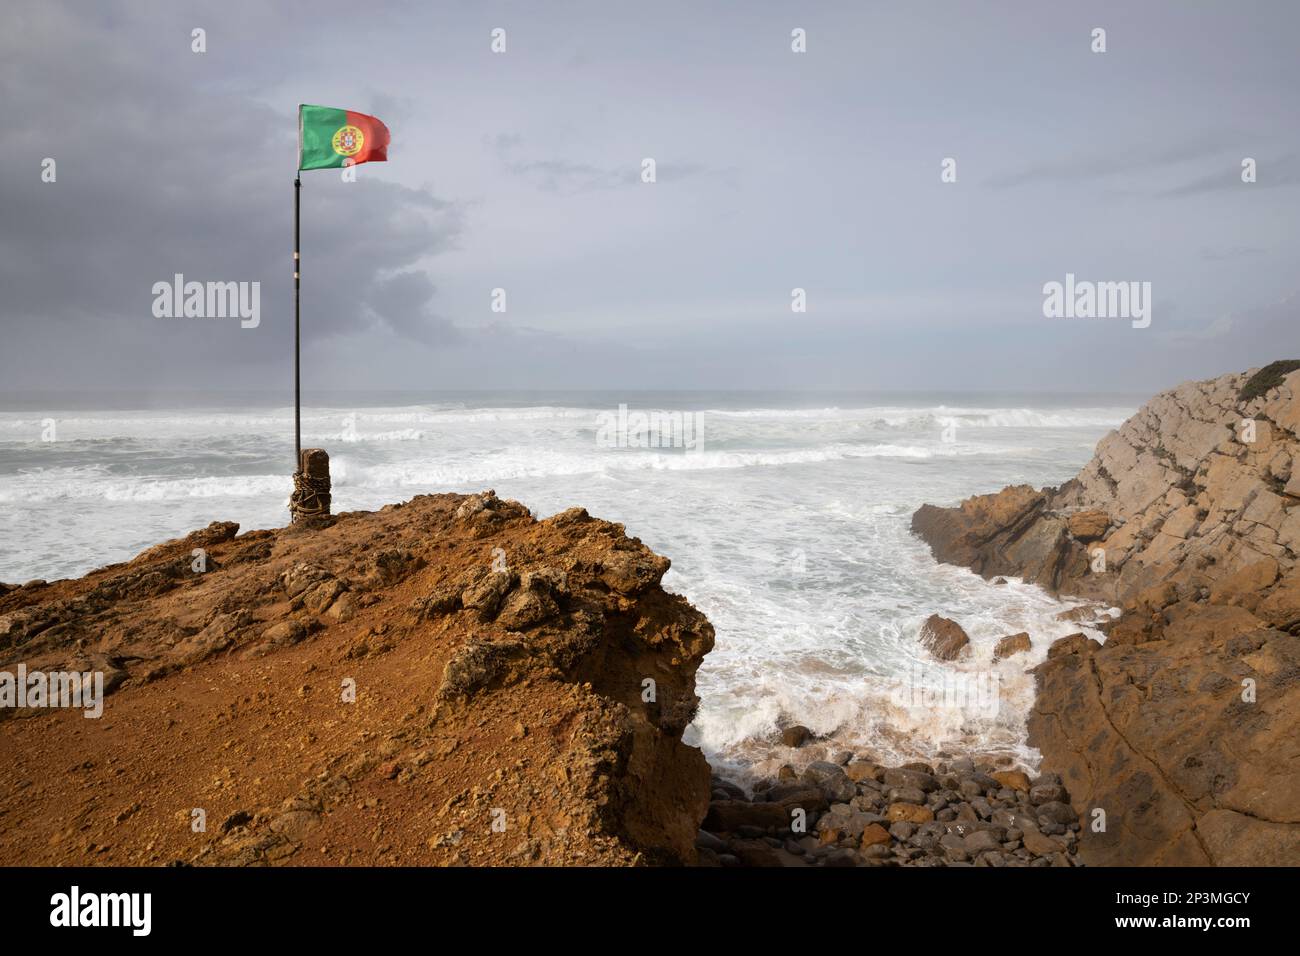 Bandera portuguesa volando en viento con las olas tormentosas del océano Atlántico rompiendo en la playa de Praia do Guincho Foto de stock